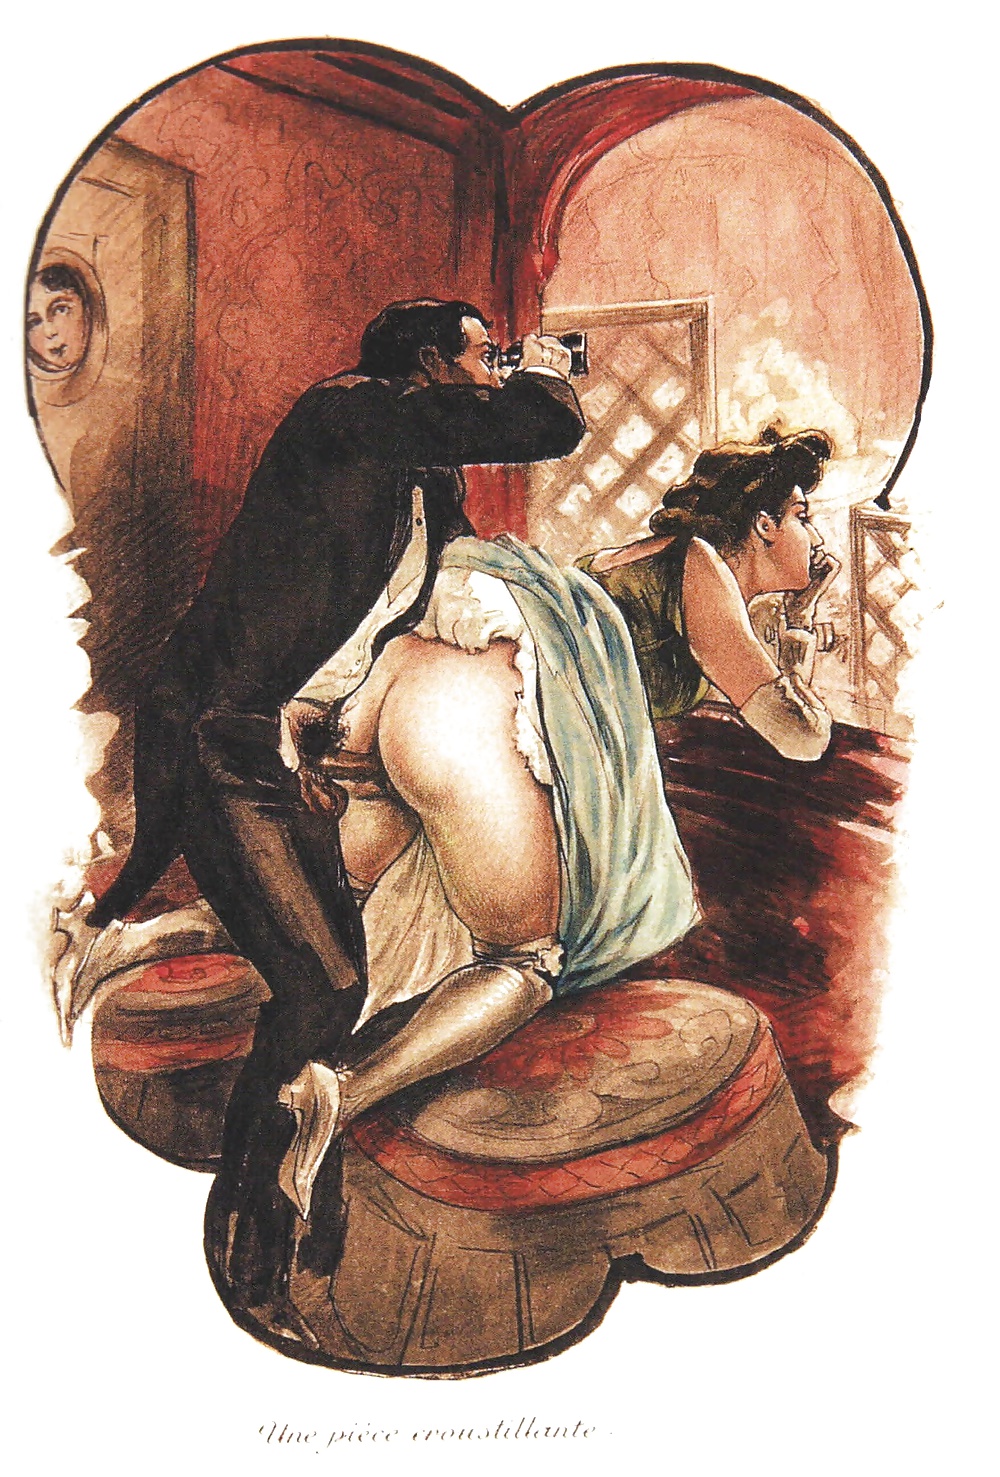 Смотрите Erotic art from the 19th century - 49 фотки на xHamster.com! xHams...